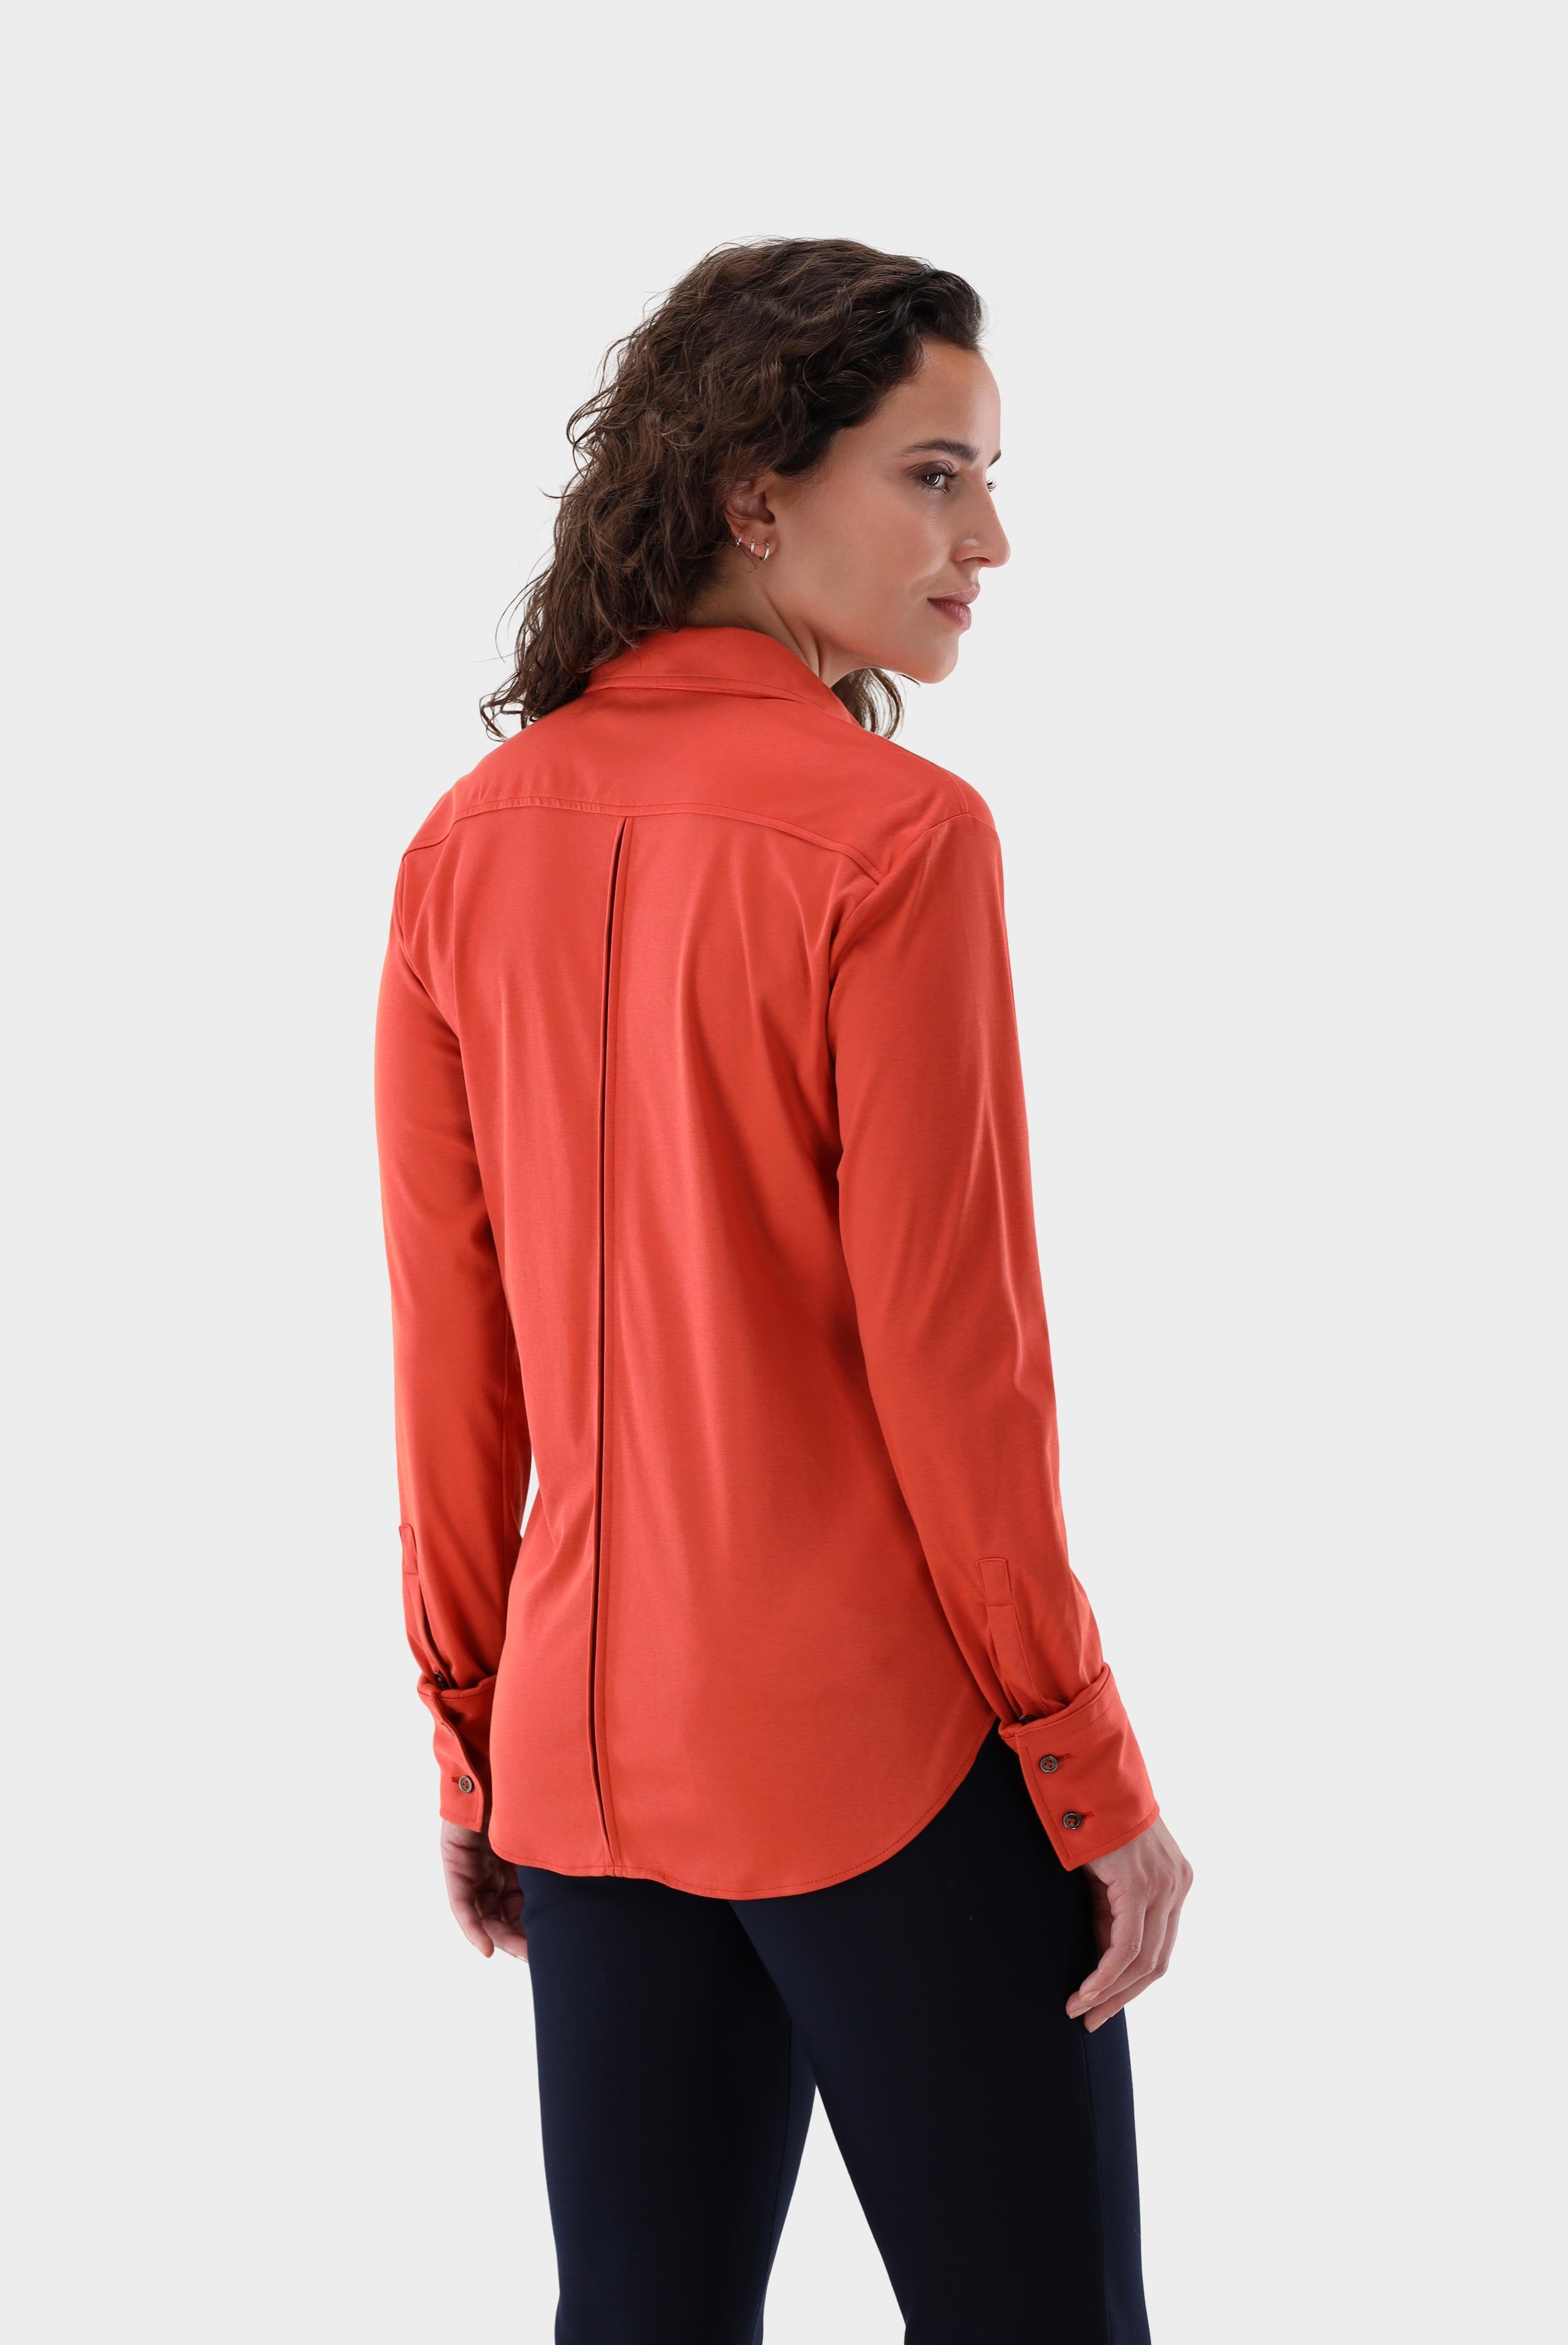 Casual Blusen+Taillierte Jersey Hemdbluse aus Schweizer Baumwolle+05.603Y..180031.360.46